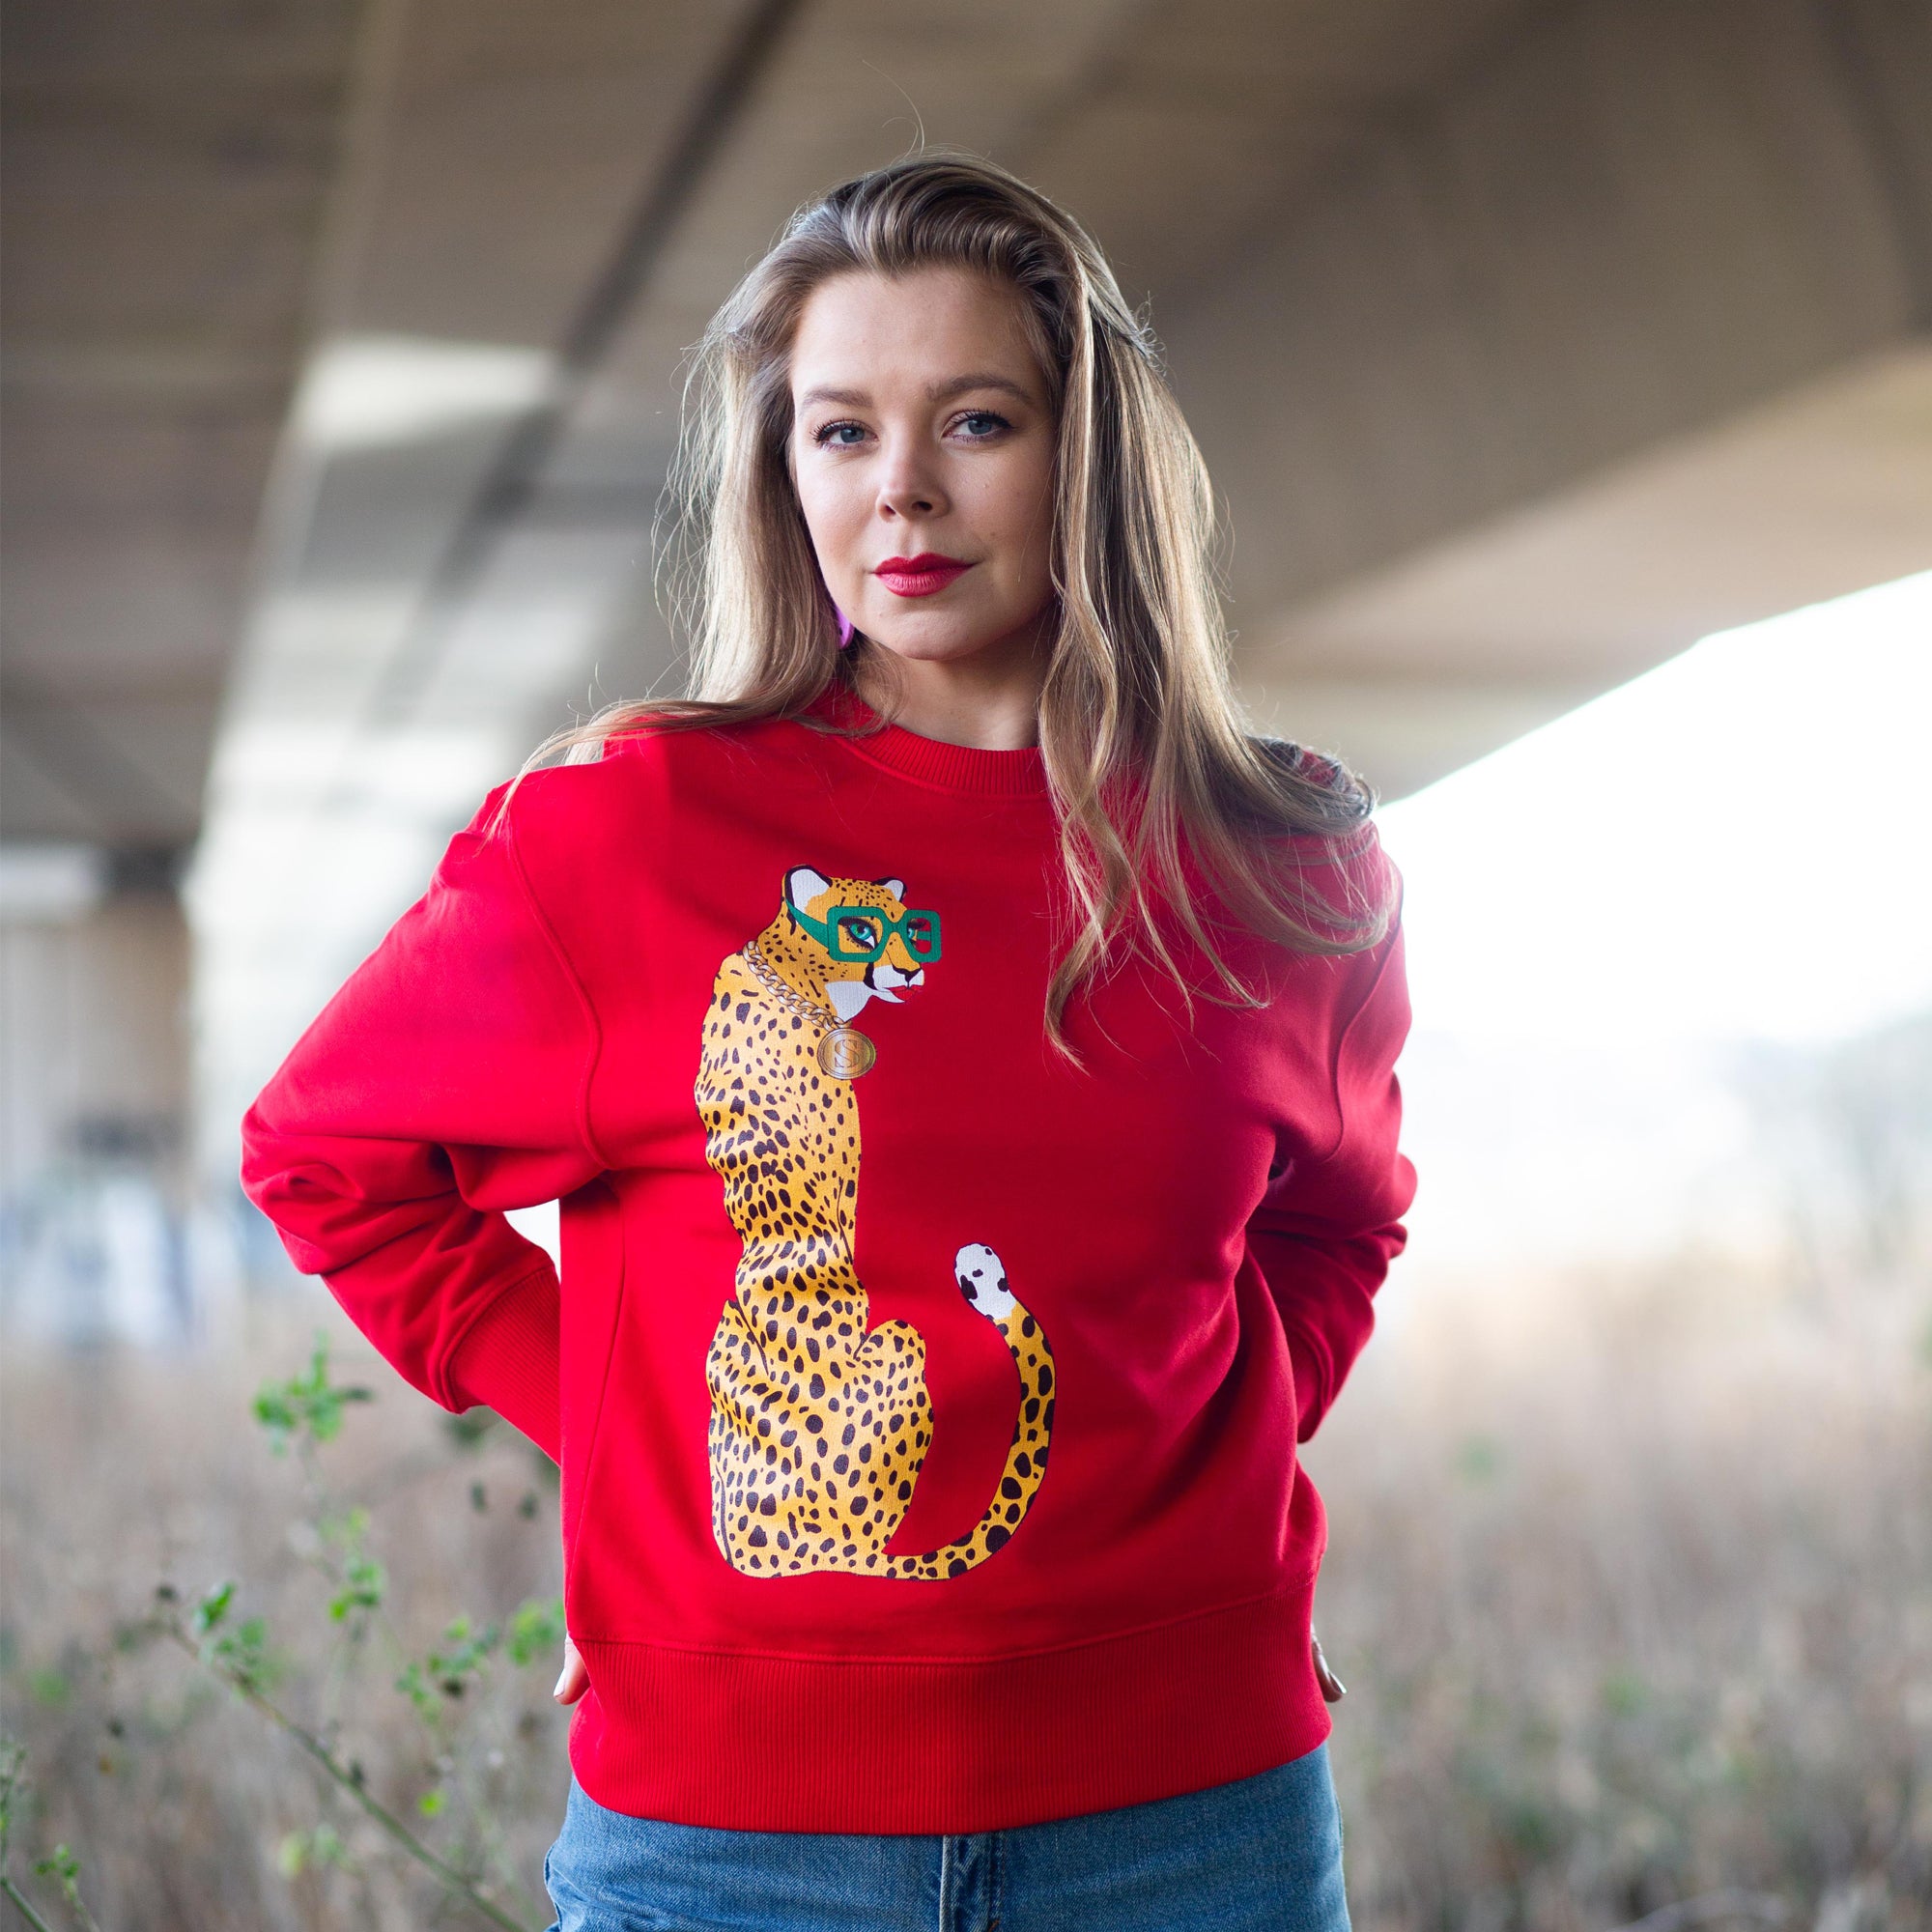 Red Unisex ' Candi Staton' Sweatshirt With Cheetah Print